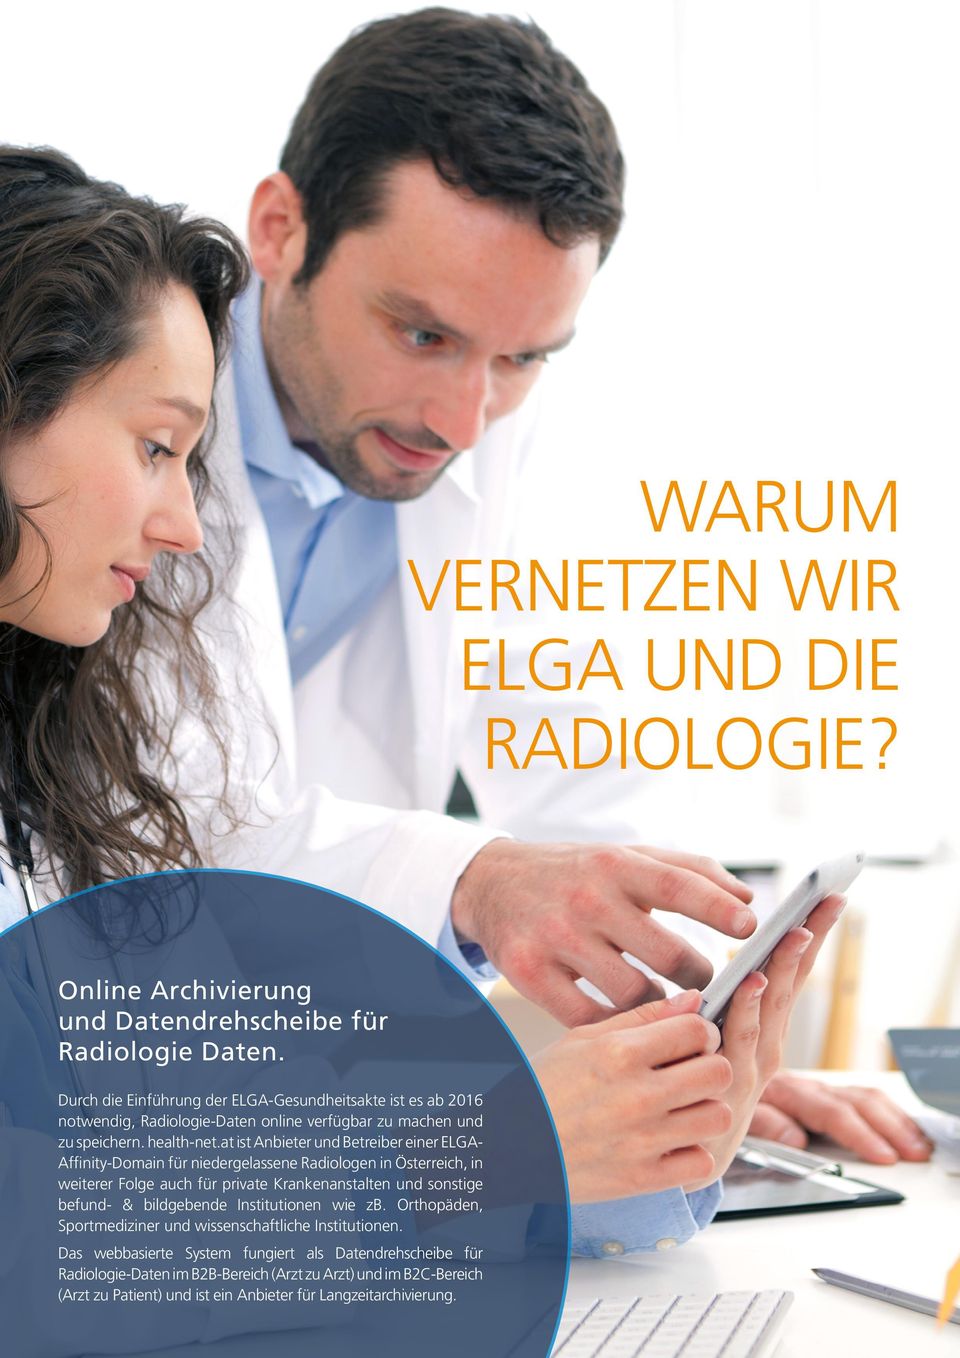 at ist Anbieter und Betreiber einer ELGA- Affinity-Domain für niedergelassene Radiologen in Österreich, in weiterer Folge auch für private Krankenanstalten und sonstige befund- &